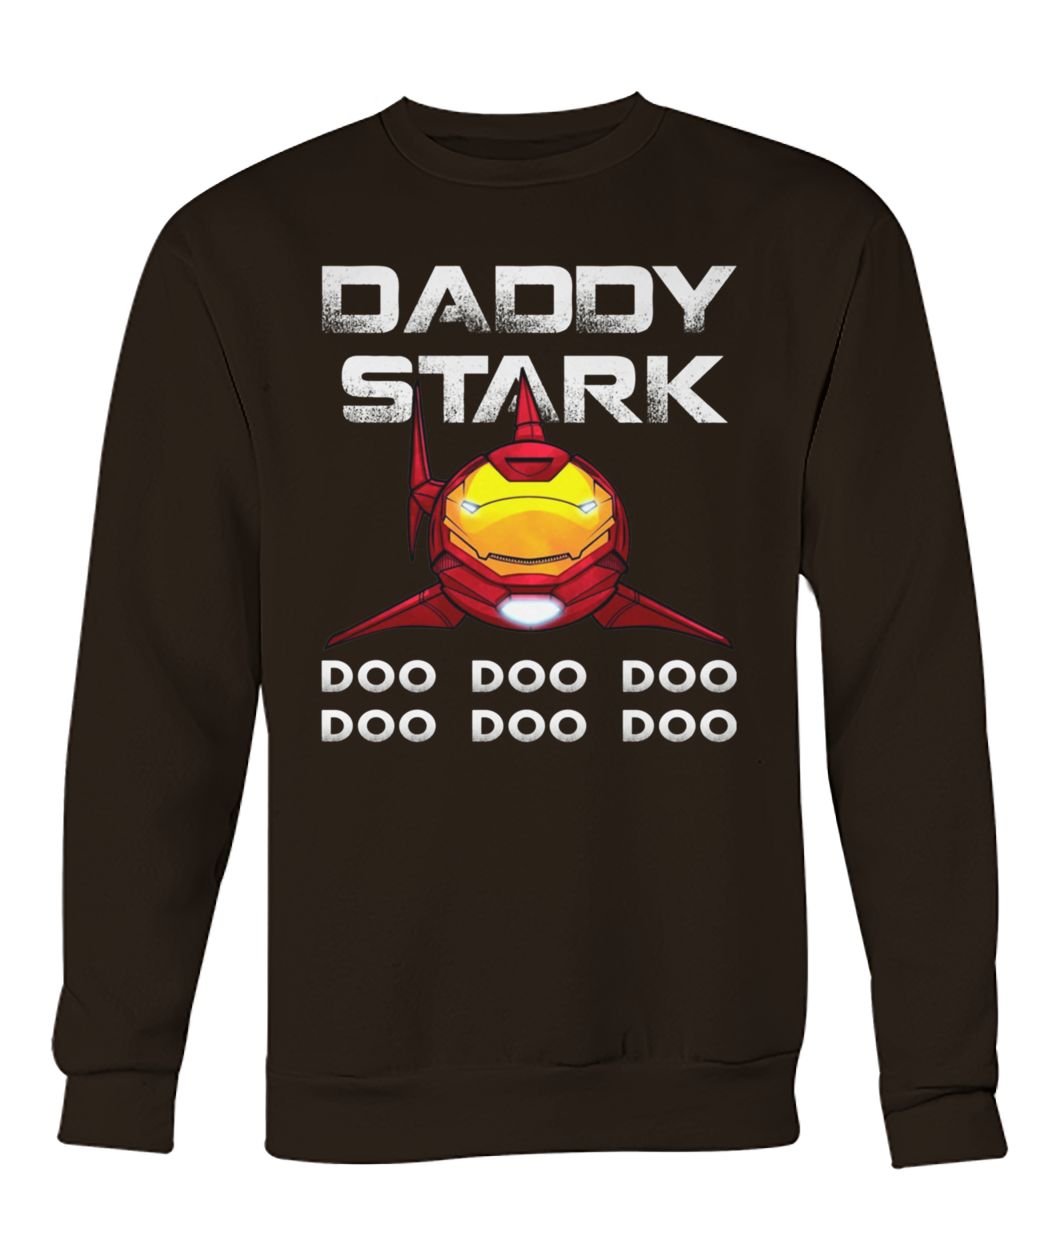 Iron shark daddy stark doo doo doo doo crew neck sweatshirt